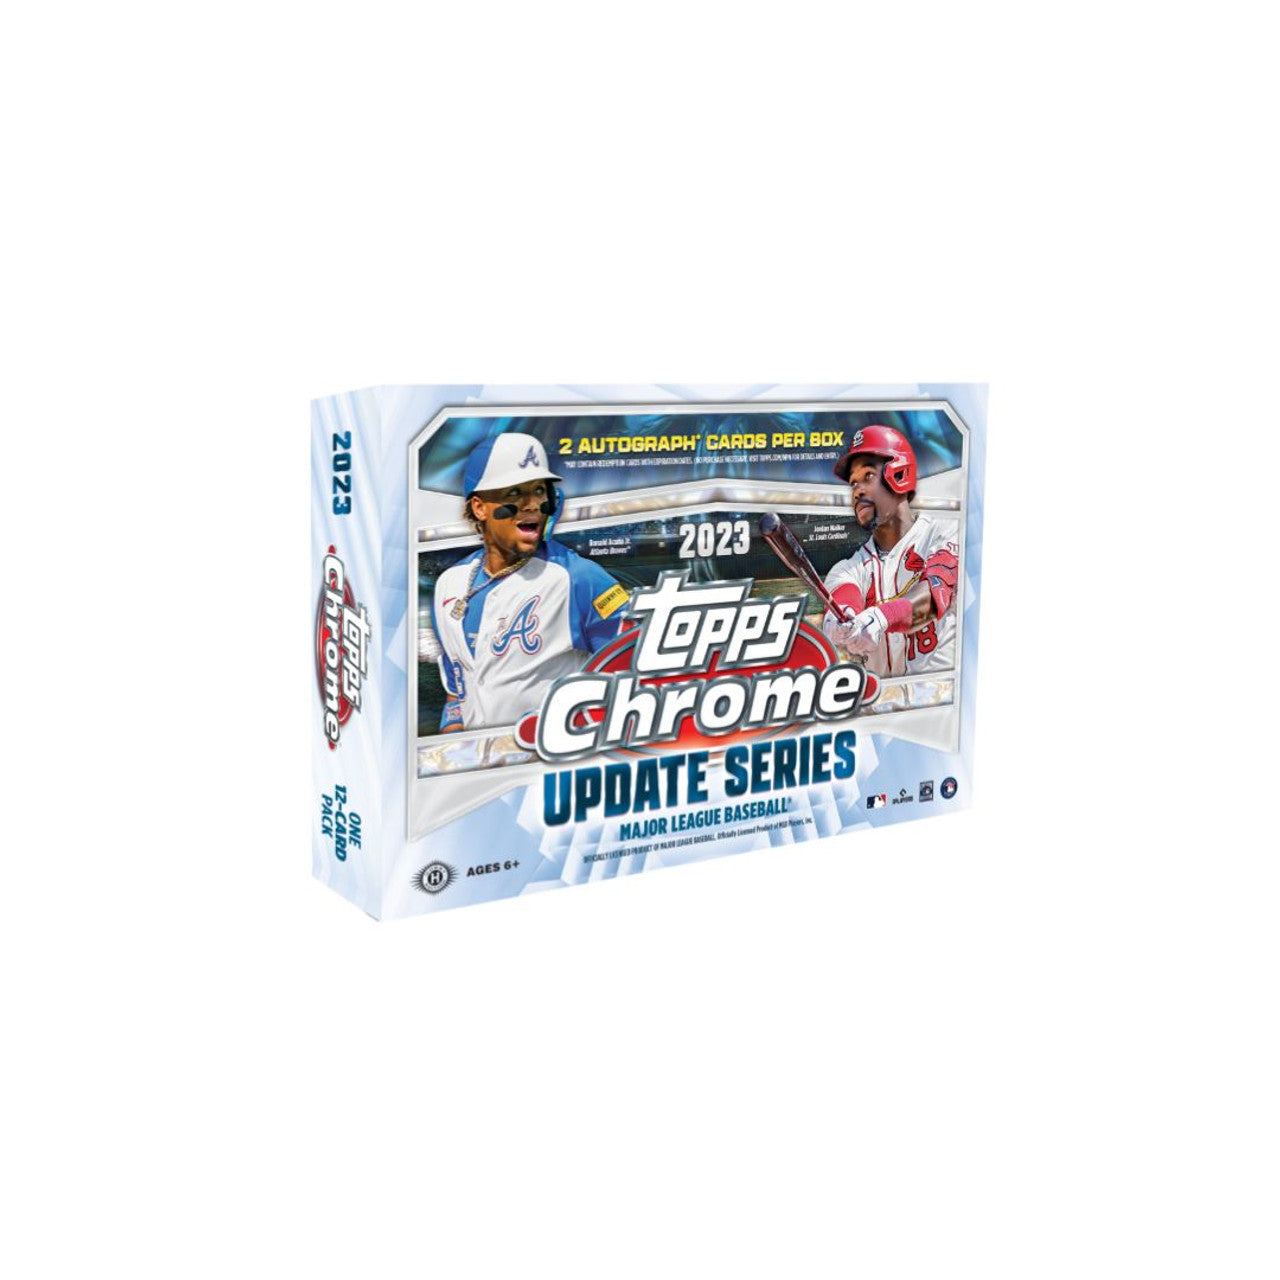 2023 Topps Chrome Update Series Baseball Breaker's Delight 10-Box Case